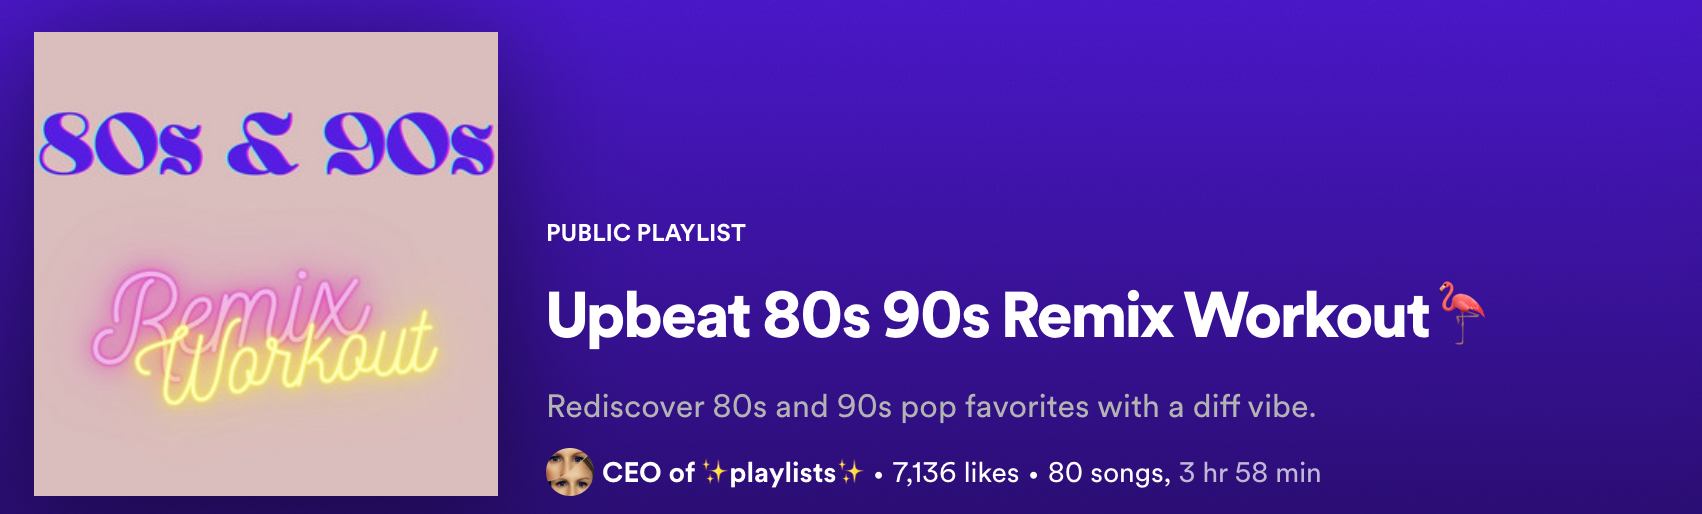 Upbeat 80s 90s Remix Workout